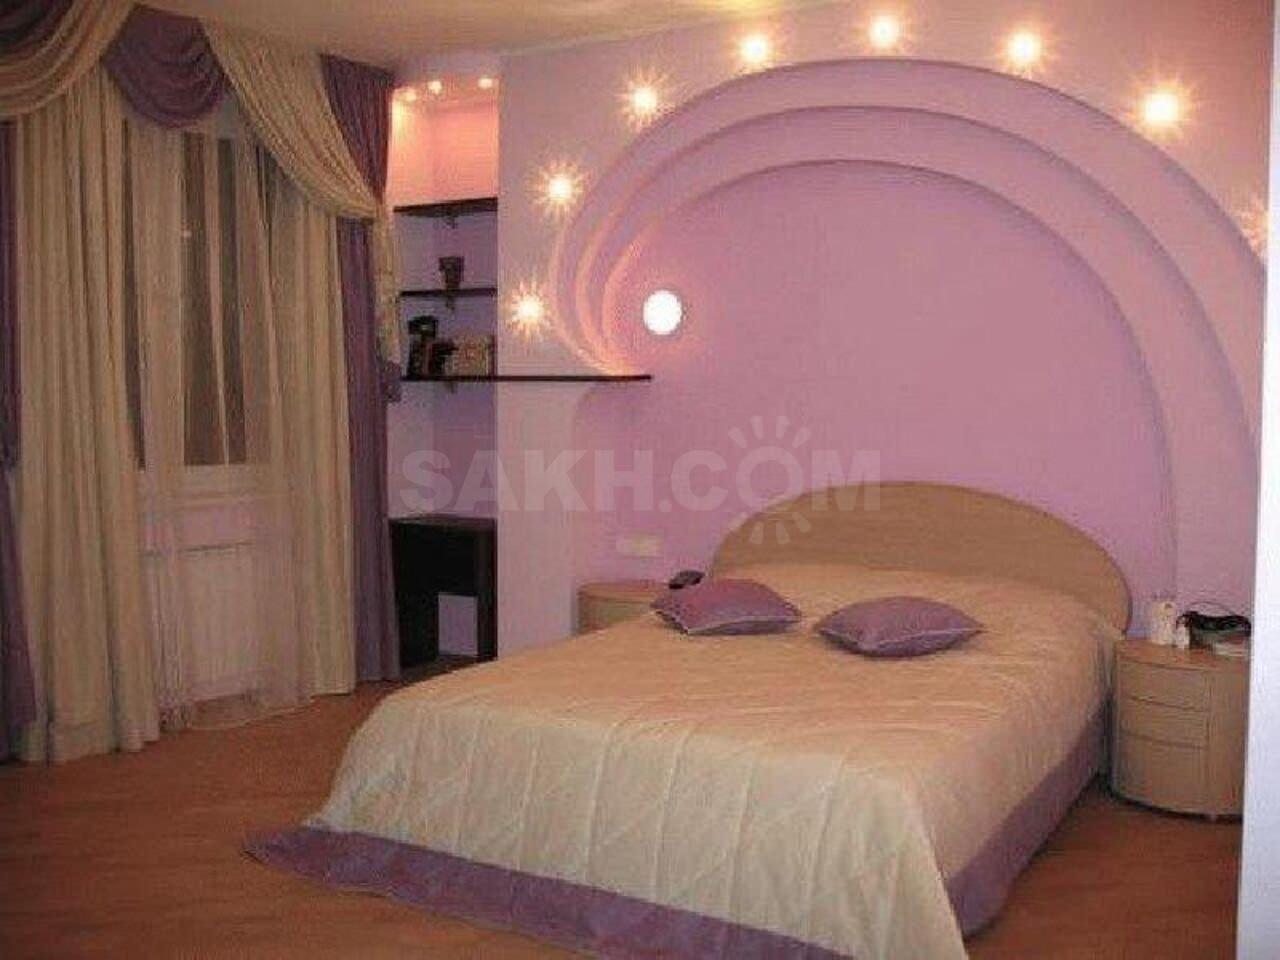 Спальня с аркой над кроватью (33 фото)